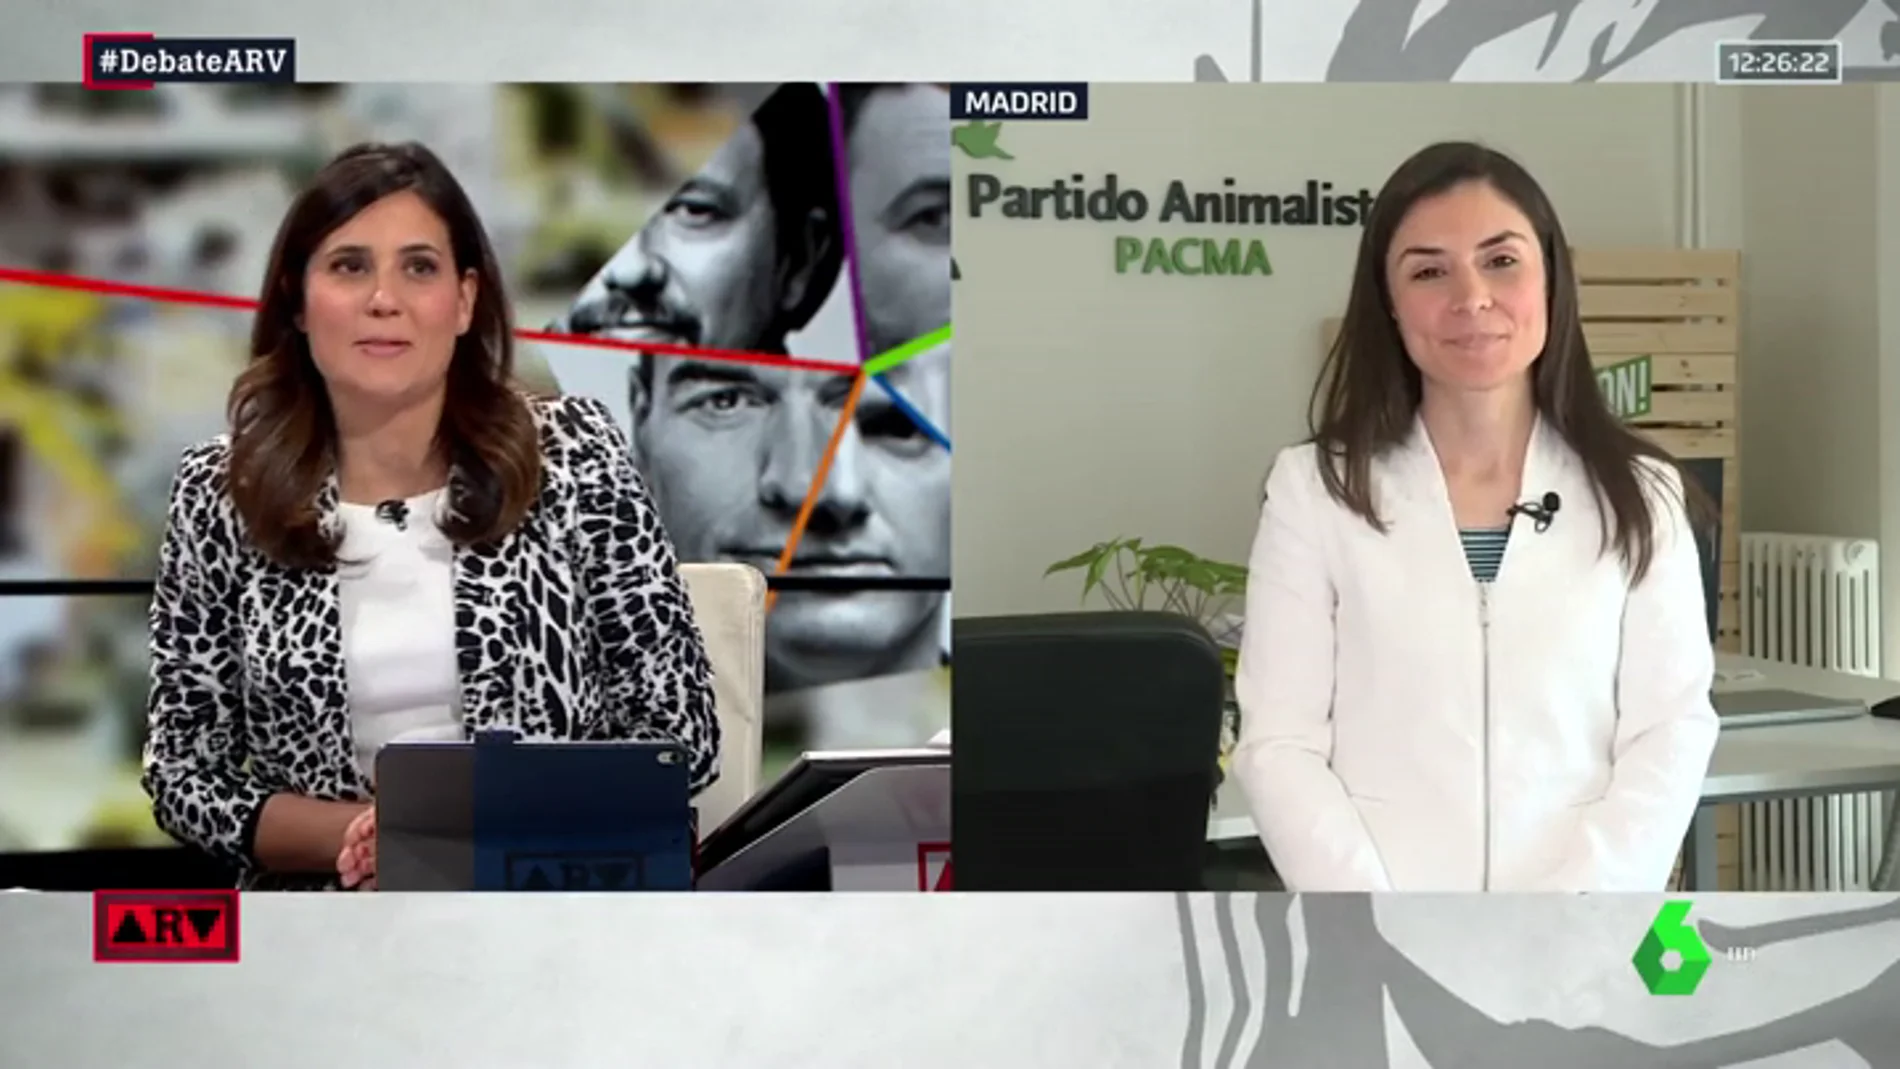 Laura Duarte (Pacma): "El resto de partidos no trabaja para que las leyes protejan a los animales"